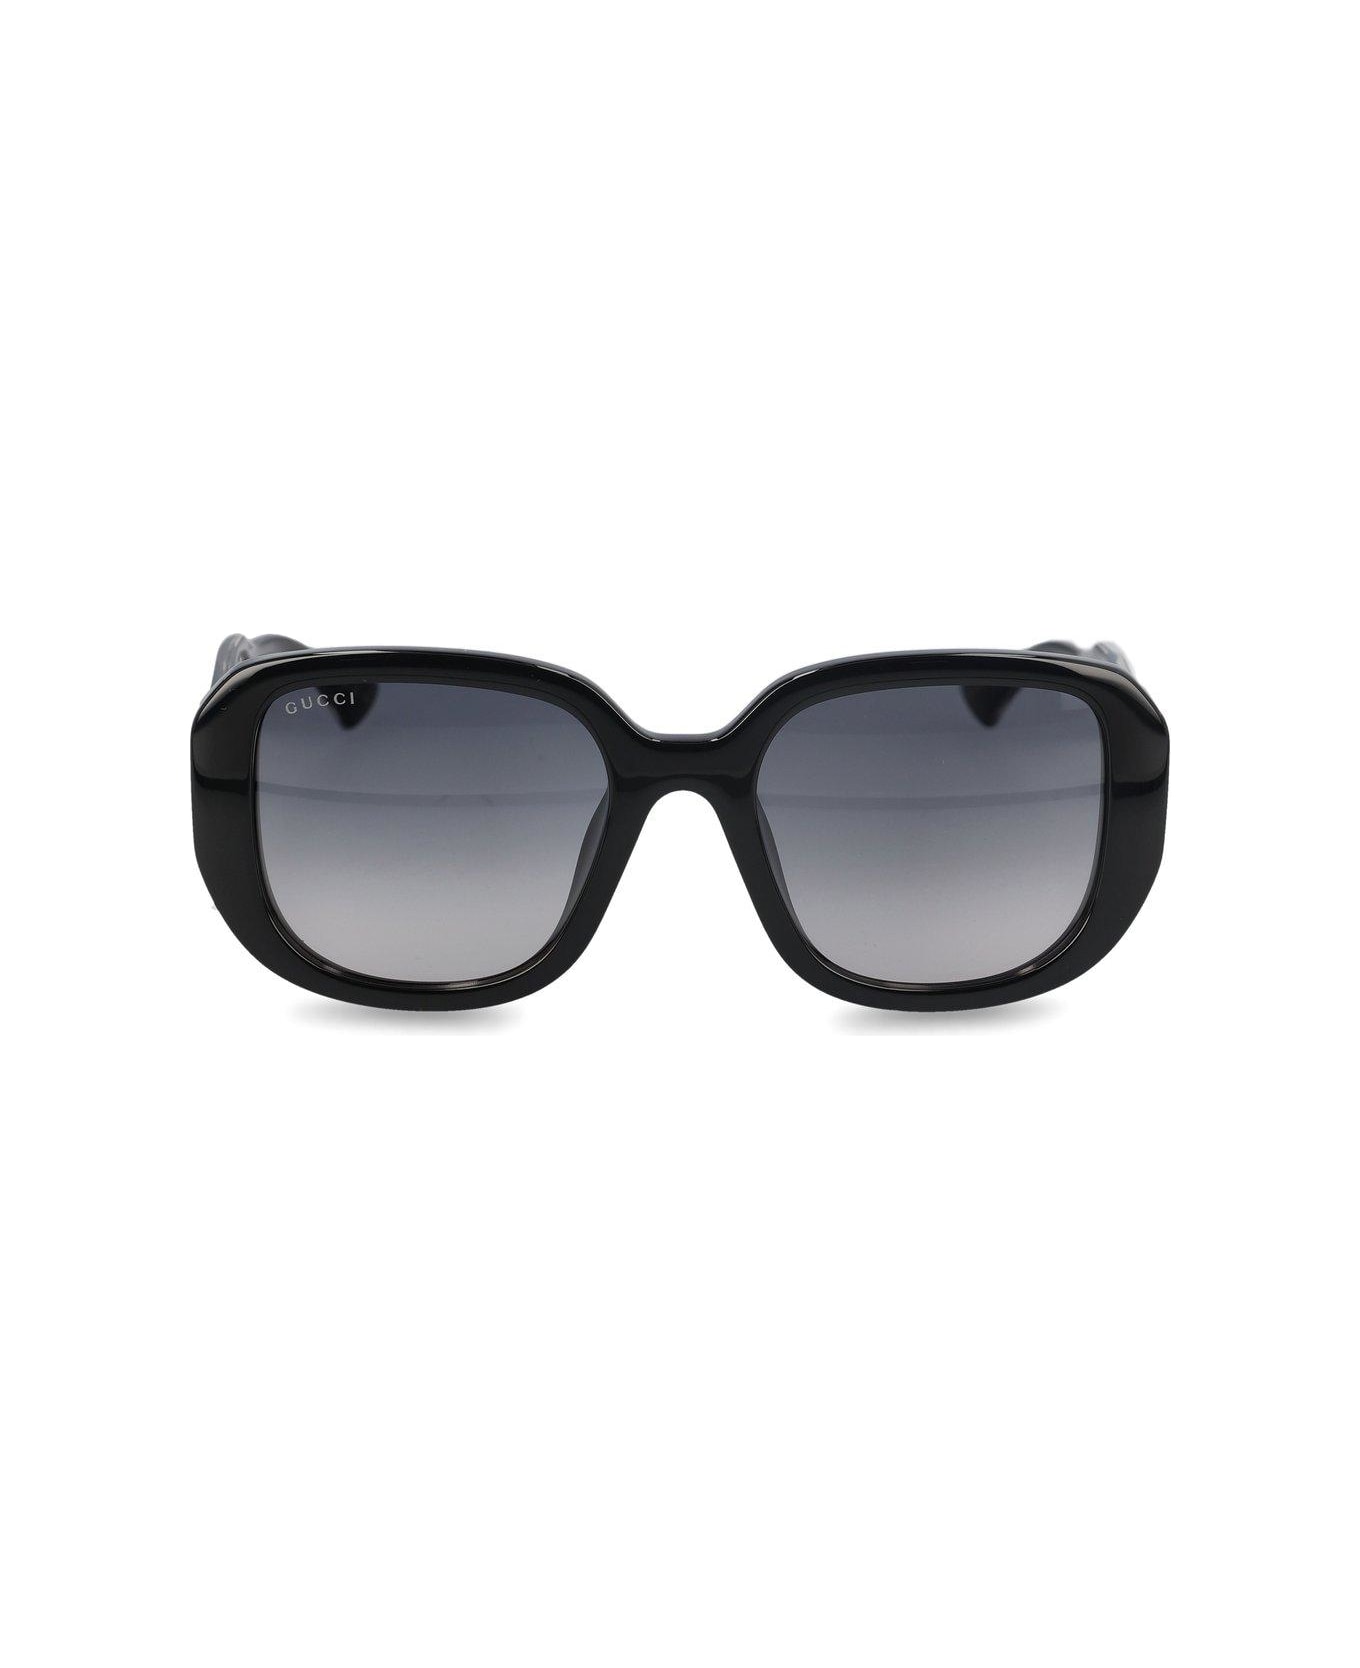 Gucci Eyewear Round Frame Sunglasses - Black Crystal Grey